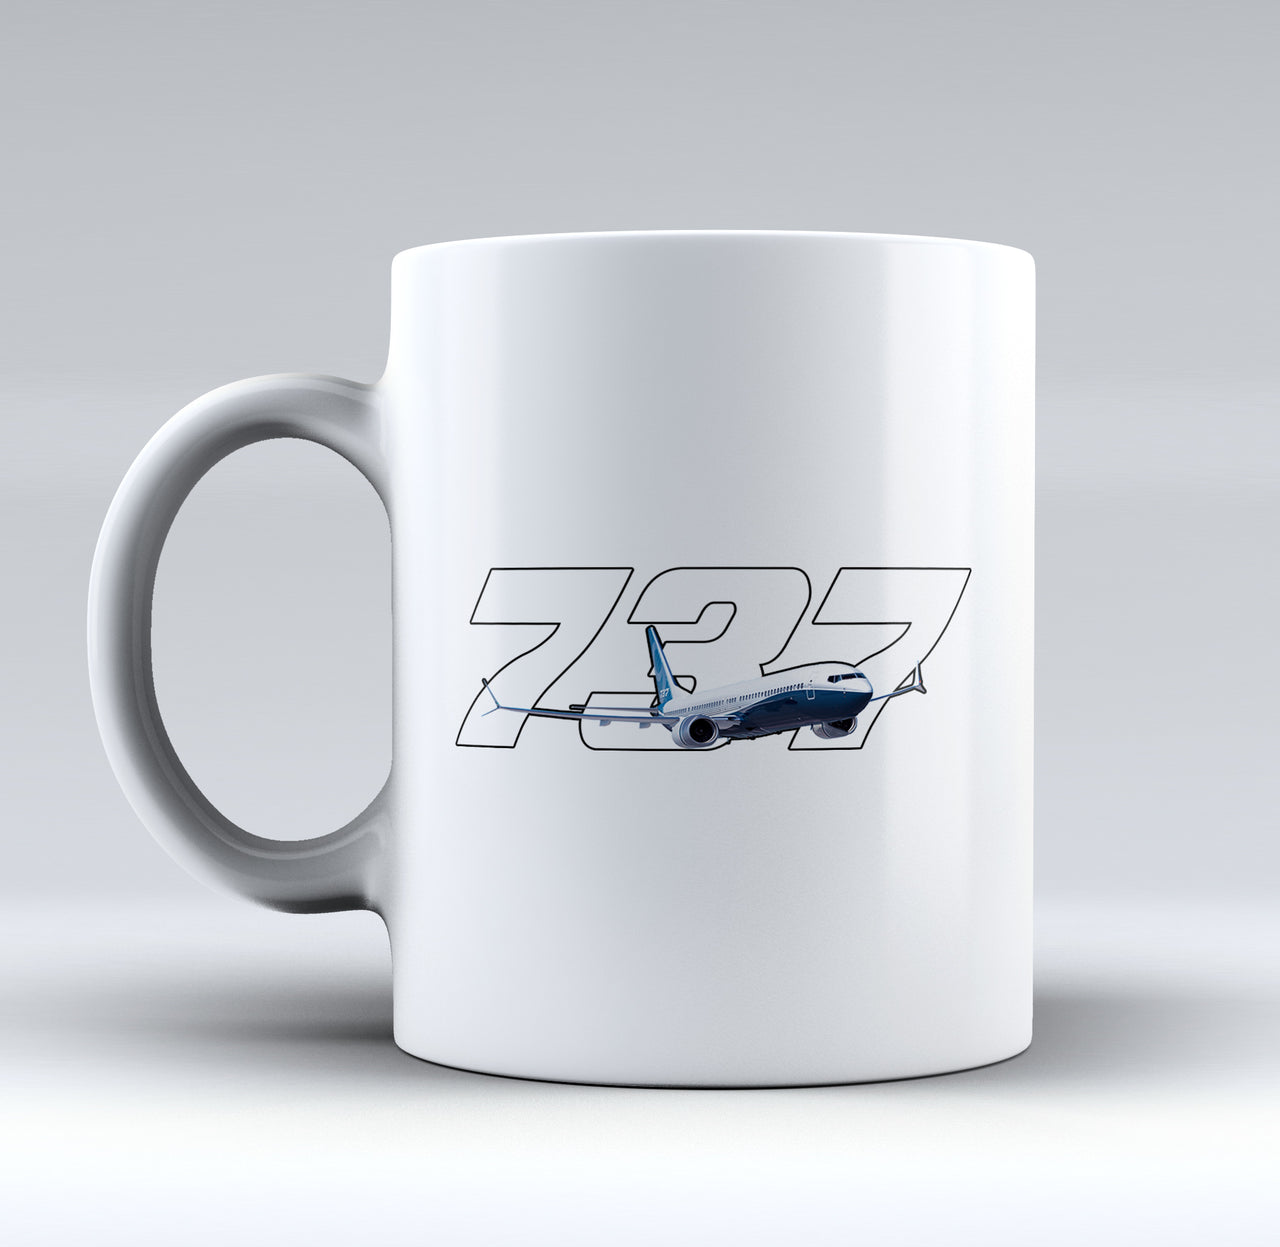 Super Boeing 737 Designed Mugs